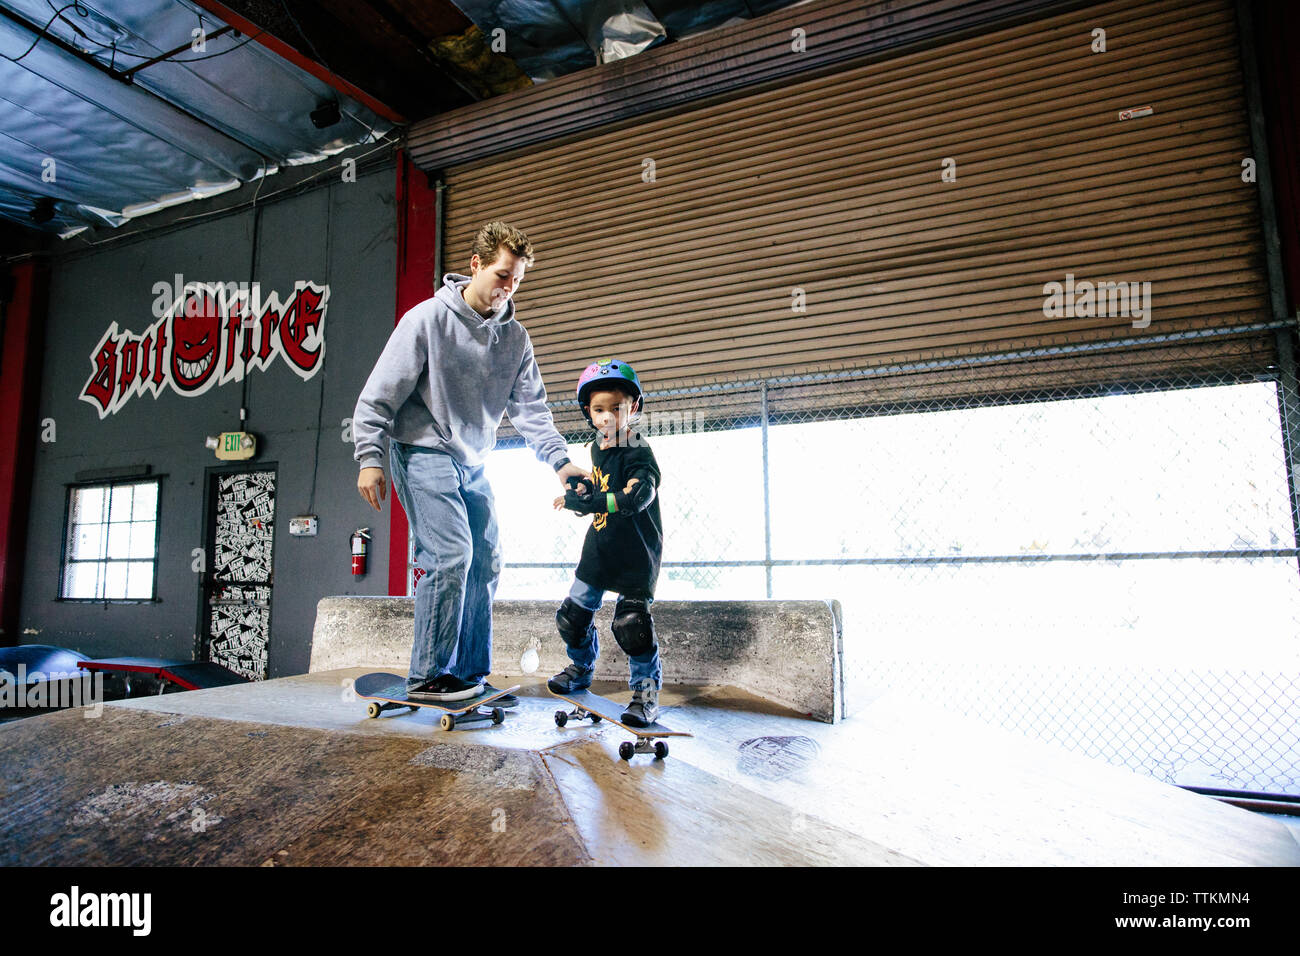 El cabrito y el patinador skateboarding instructor se preparan para ir hacia abajo una rampa Foto de stock